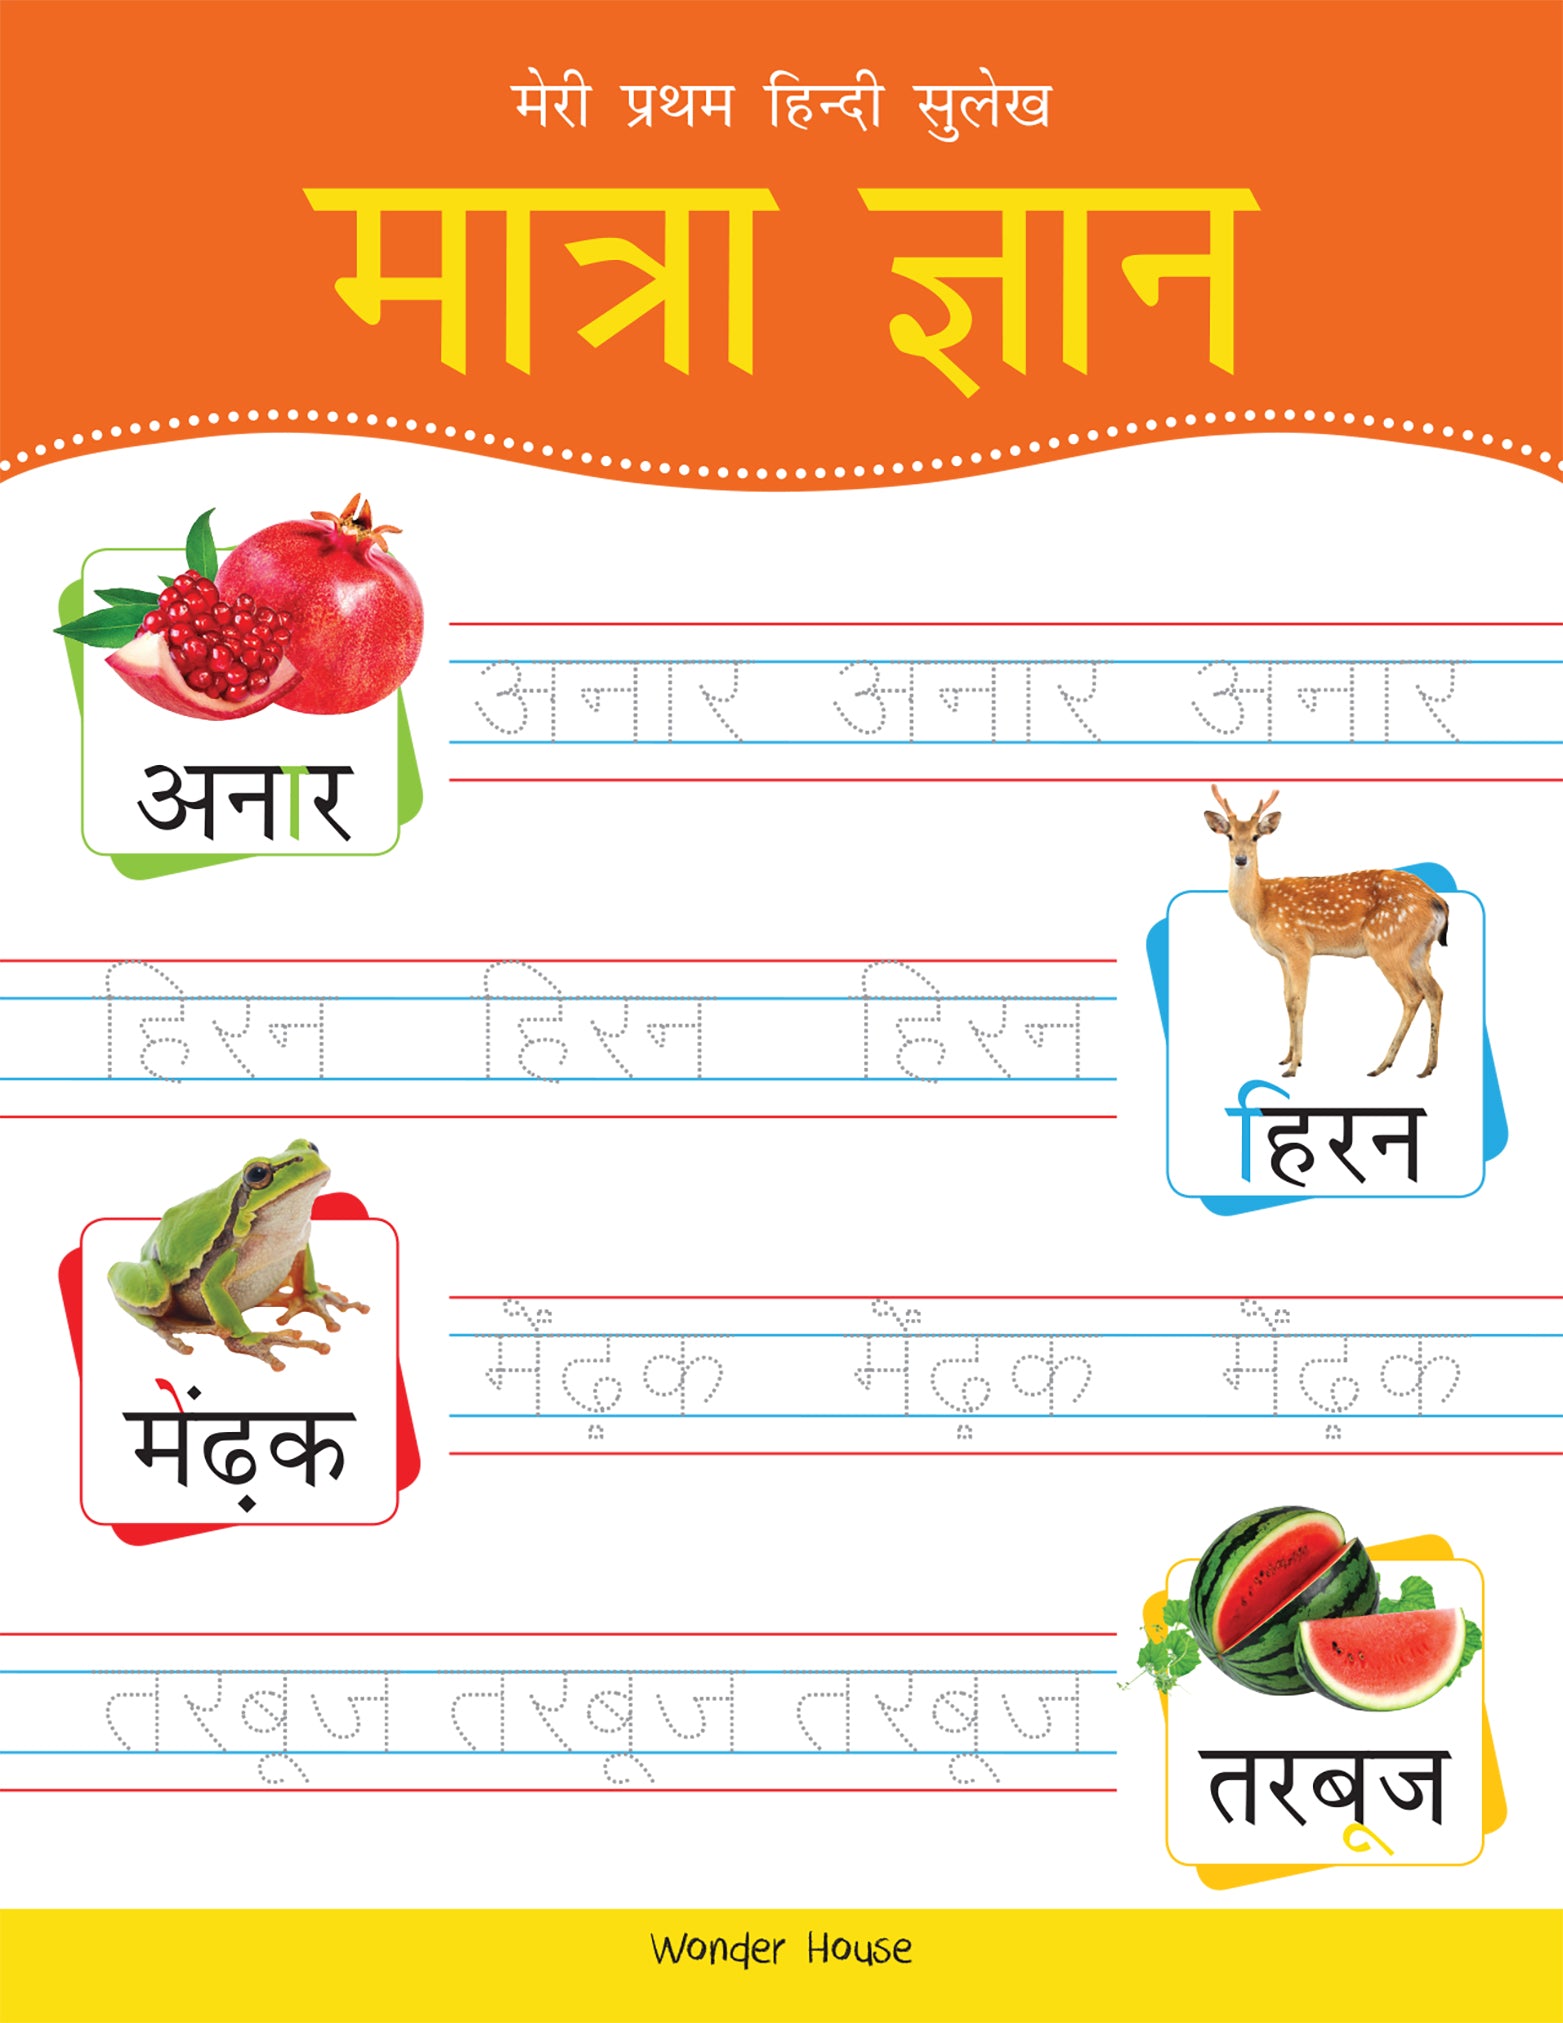 Meri Pratham Hindi Sulekh Maatra Gyaan: Hindi Writing Practice Book for Kids